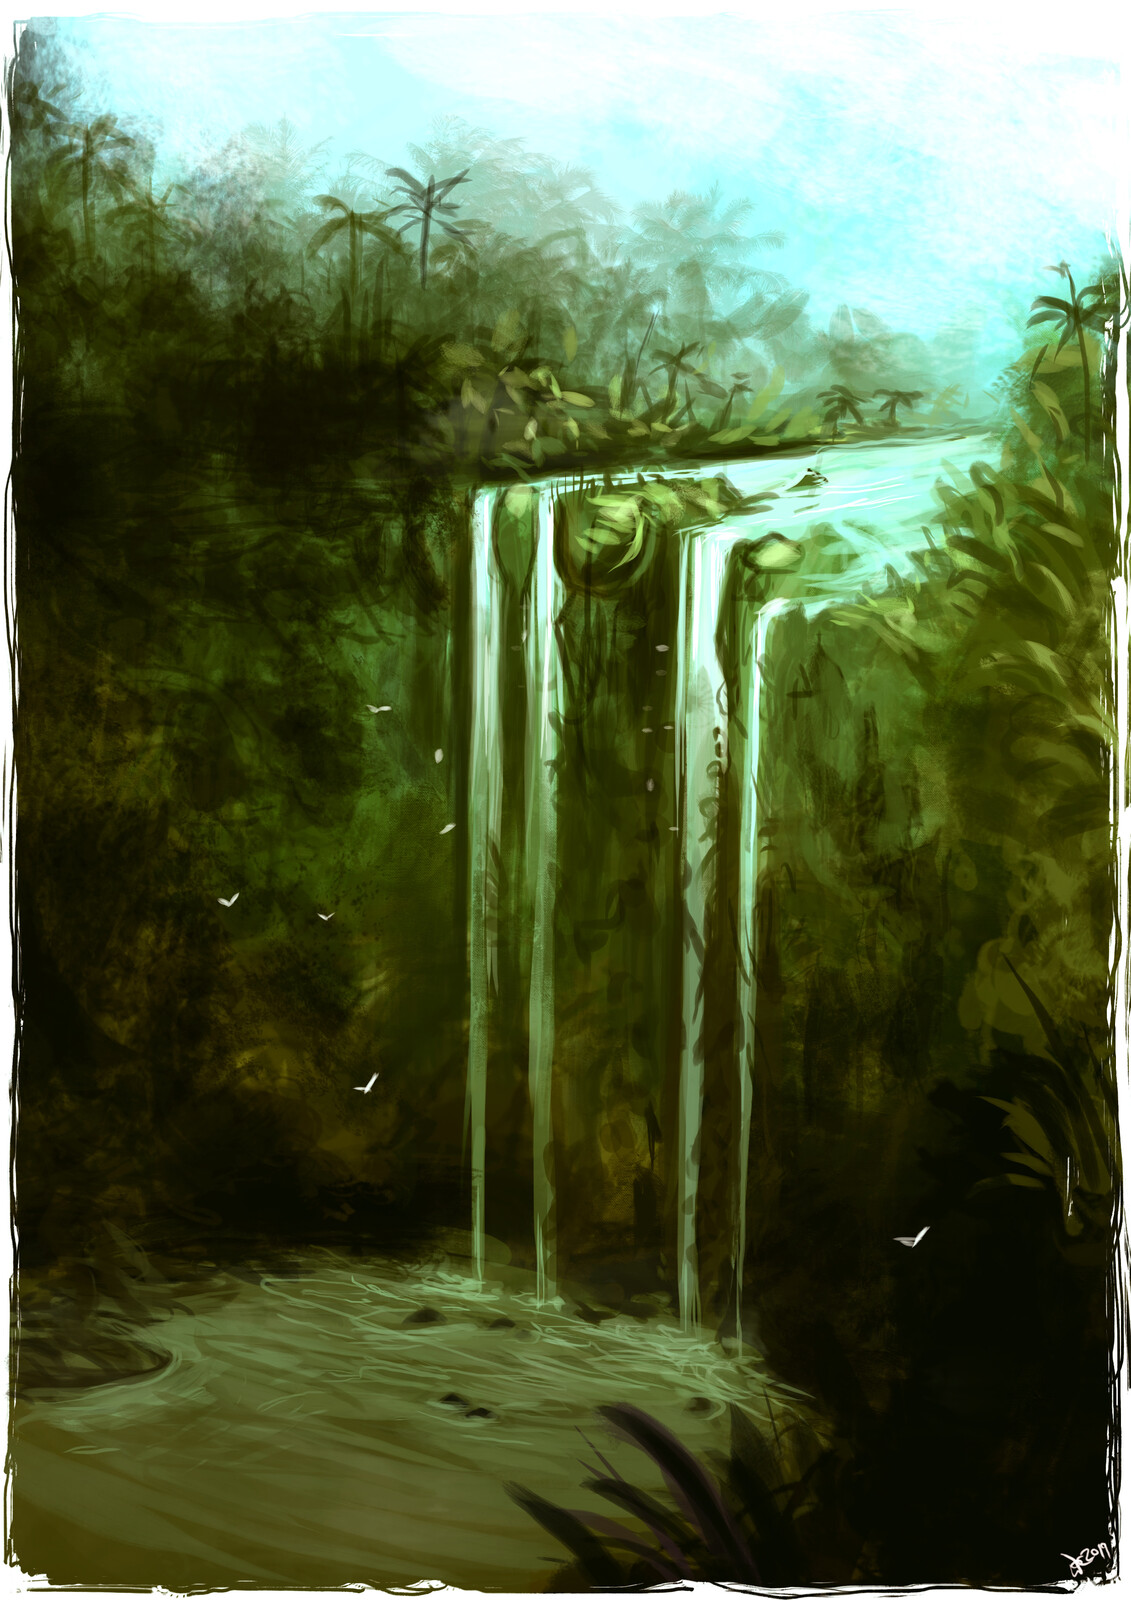 Jungle Falls